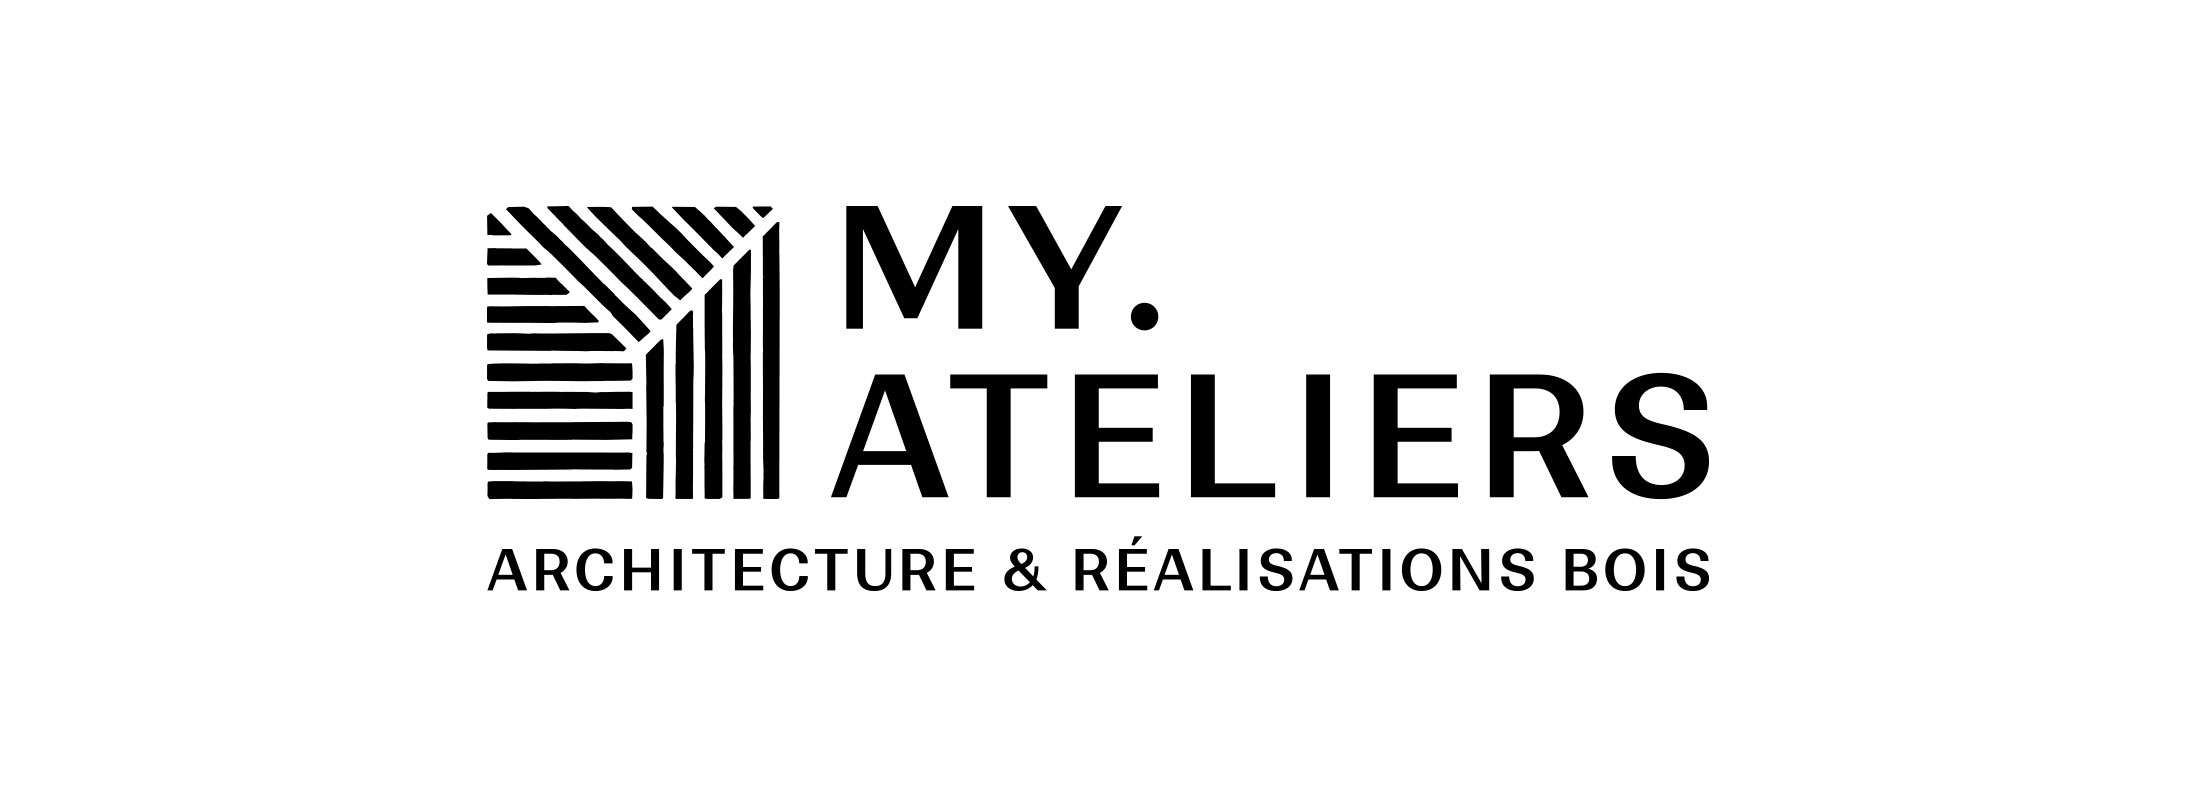 MY.ATELIERS, Matthieu Ybard, Architecture et réalisation bois.